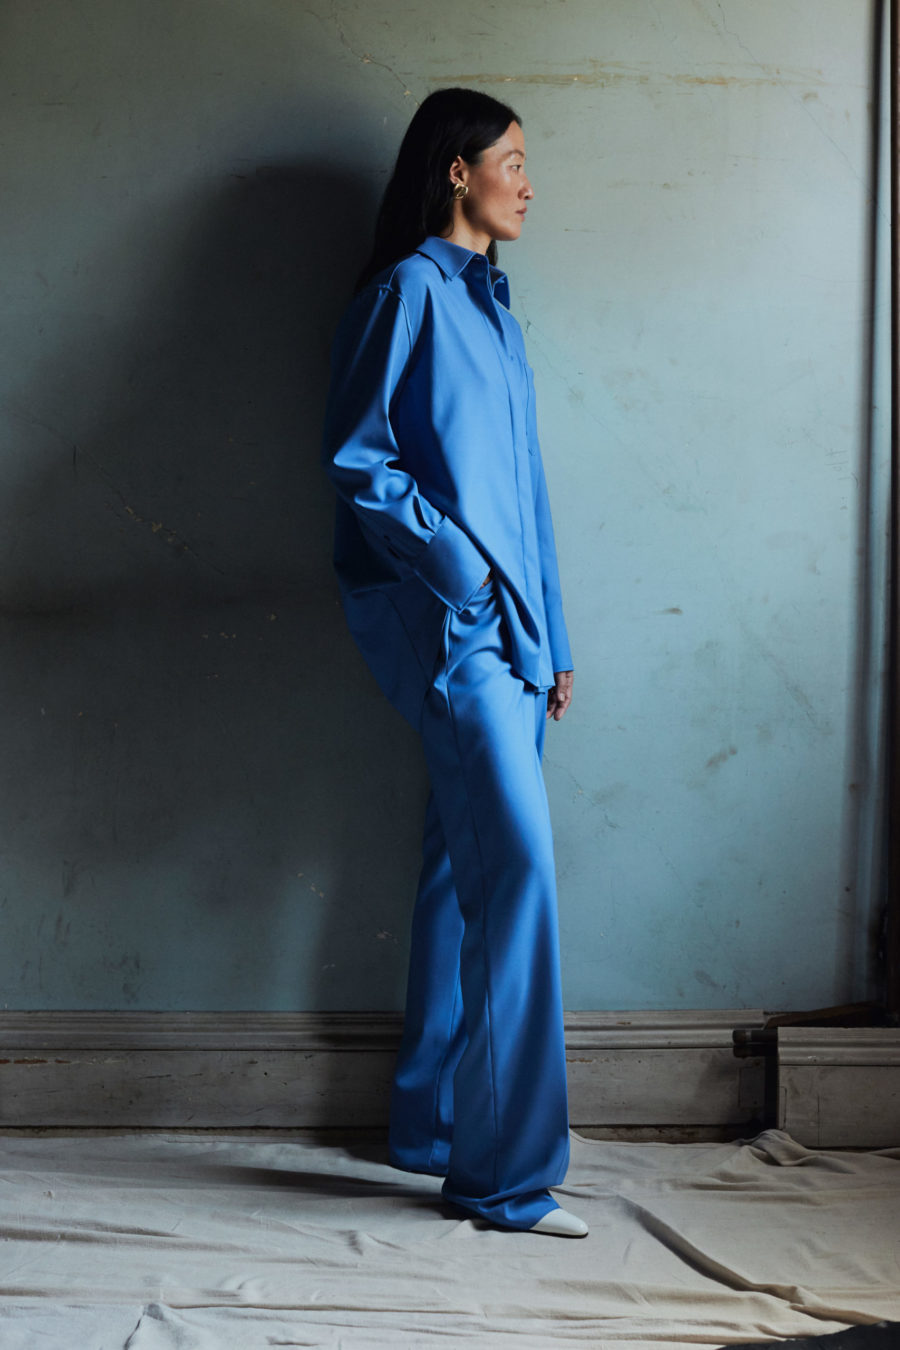 Woman wearing blue suit